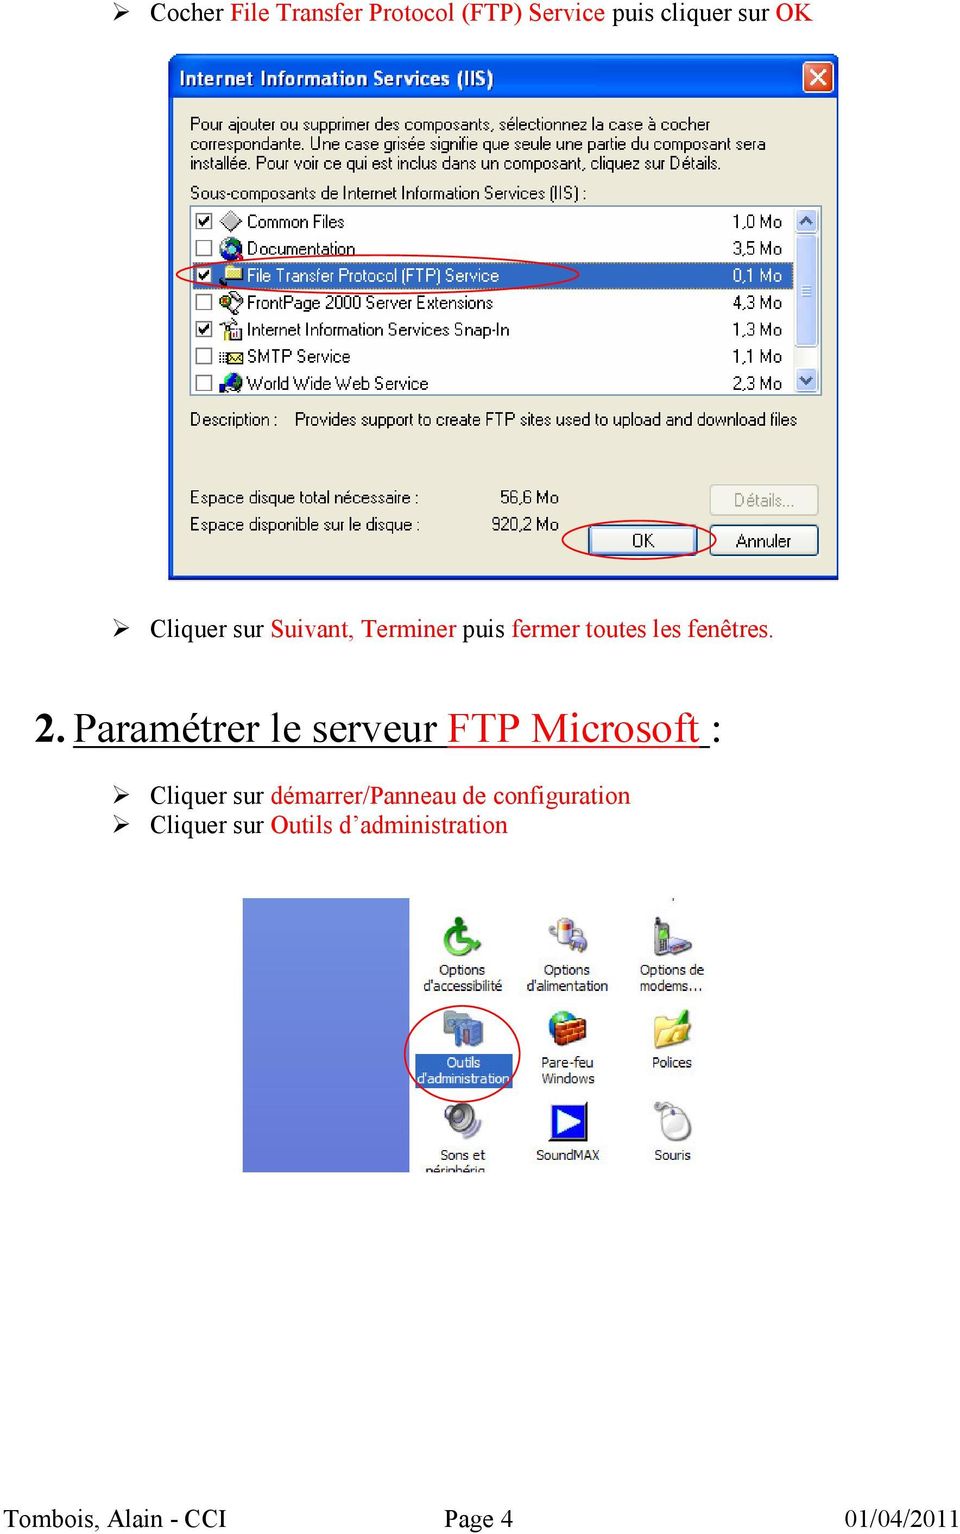 Paramétrer le serveur FTP Microsoft : Cliquer sur démarrer/panneau de